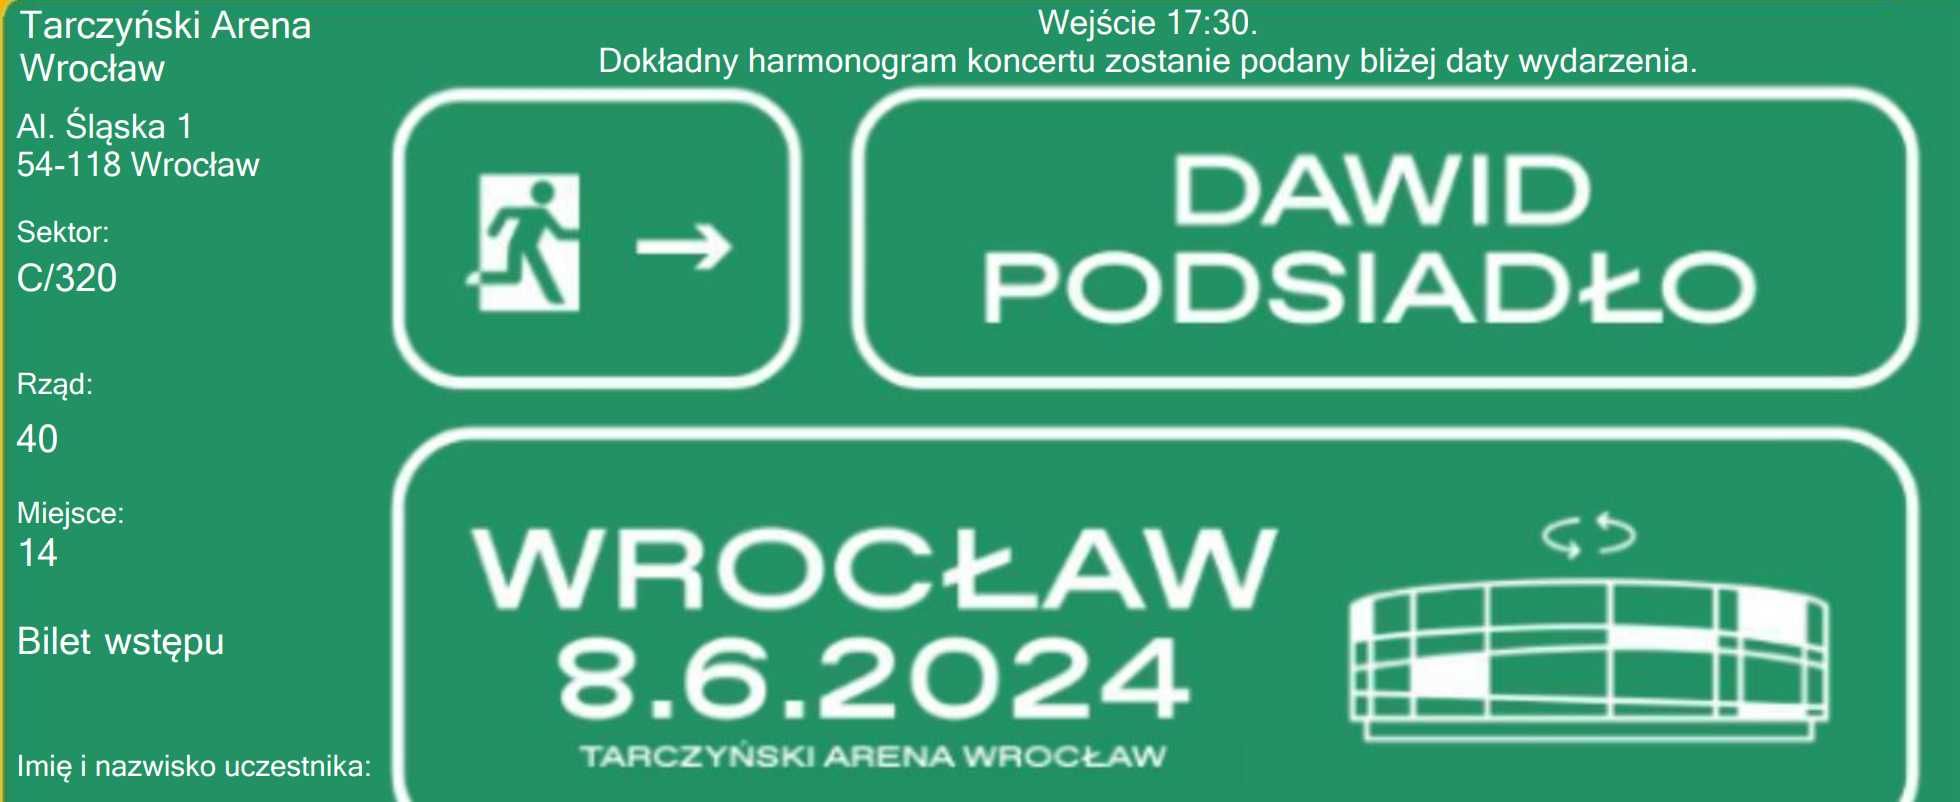 Bilet na koncert Dawida Podsiadło WROCŁAW